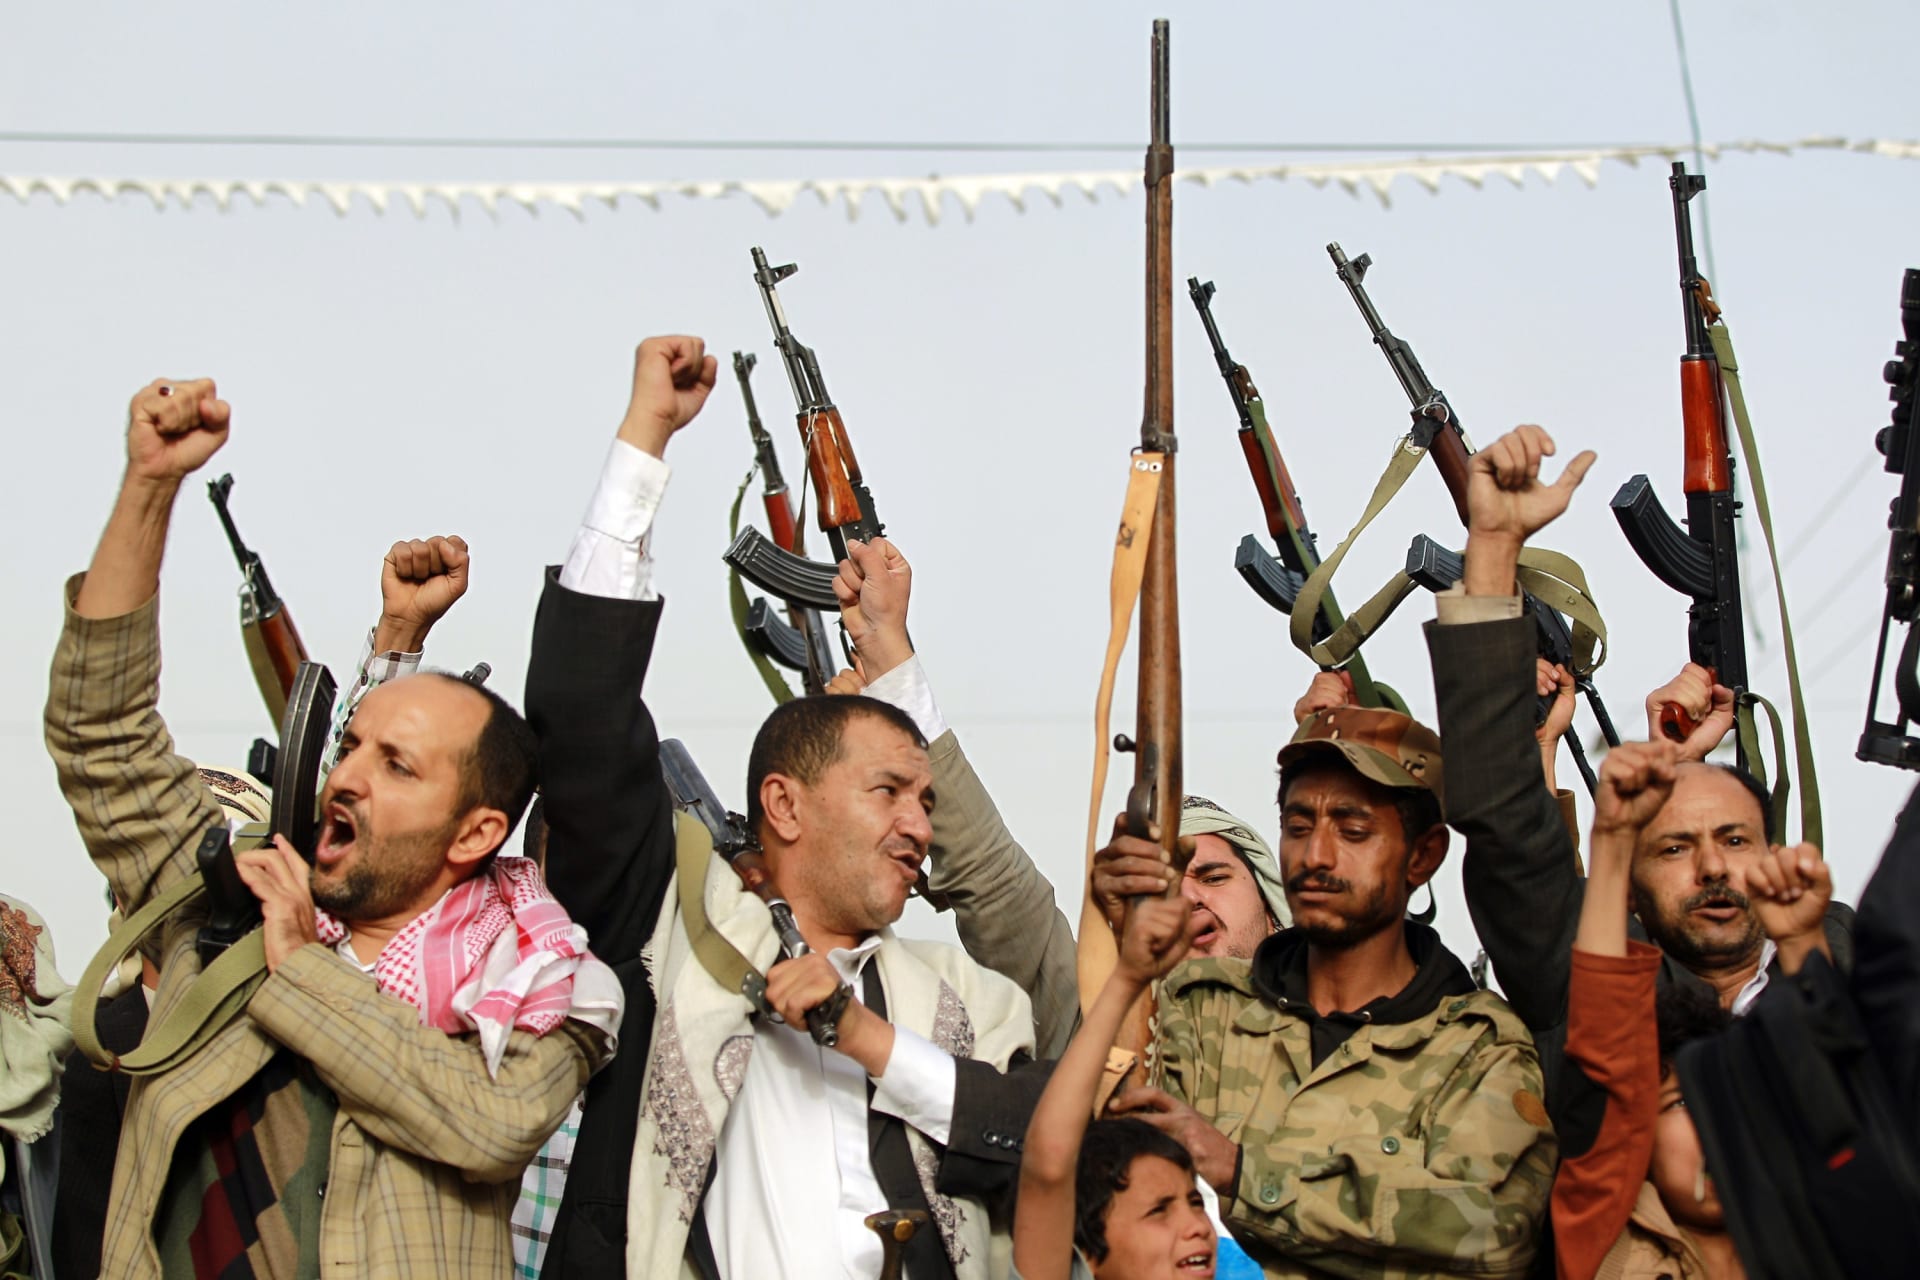 وكالة إيرانية تتهم الإخوان في اليمن بالتنسيق لعملية عسكرية واسعة مع السعودية.. وتدعو الرياض لـ"الاتعاظ من أمريكا"